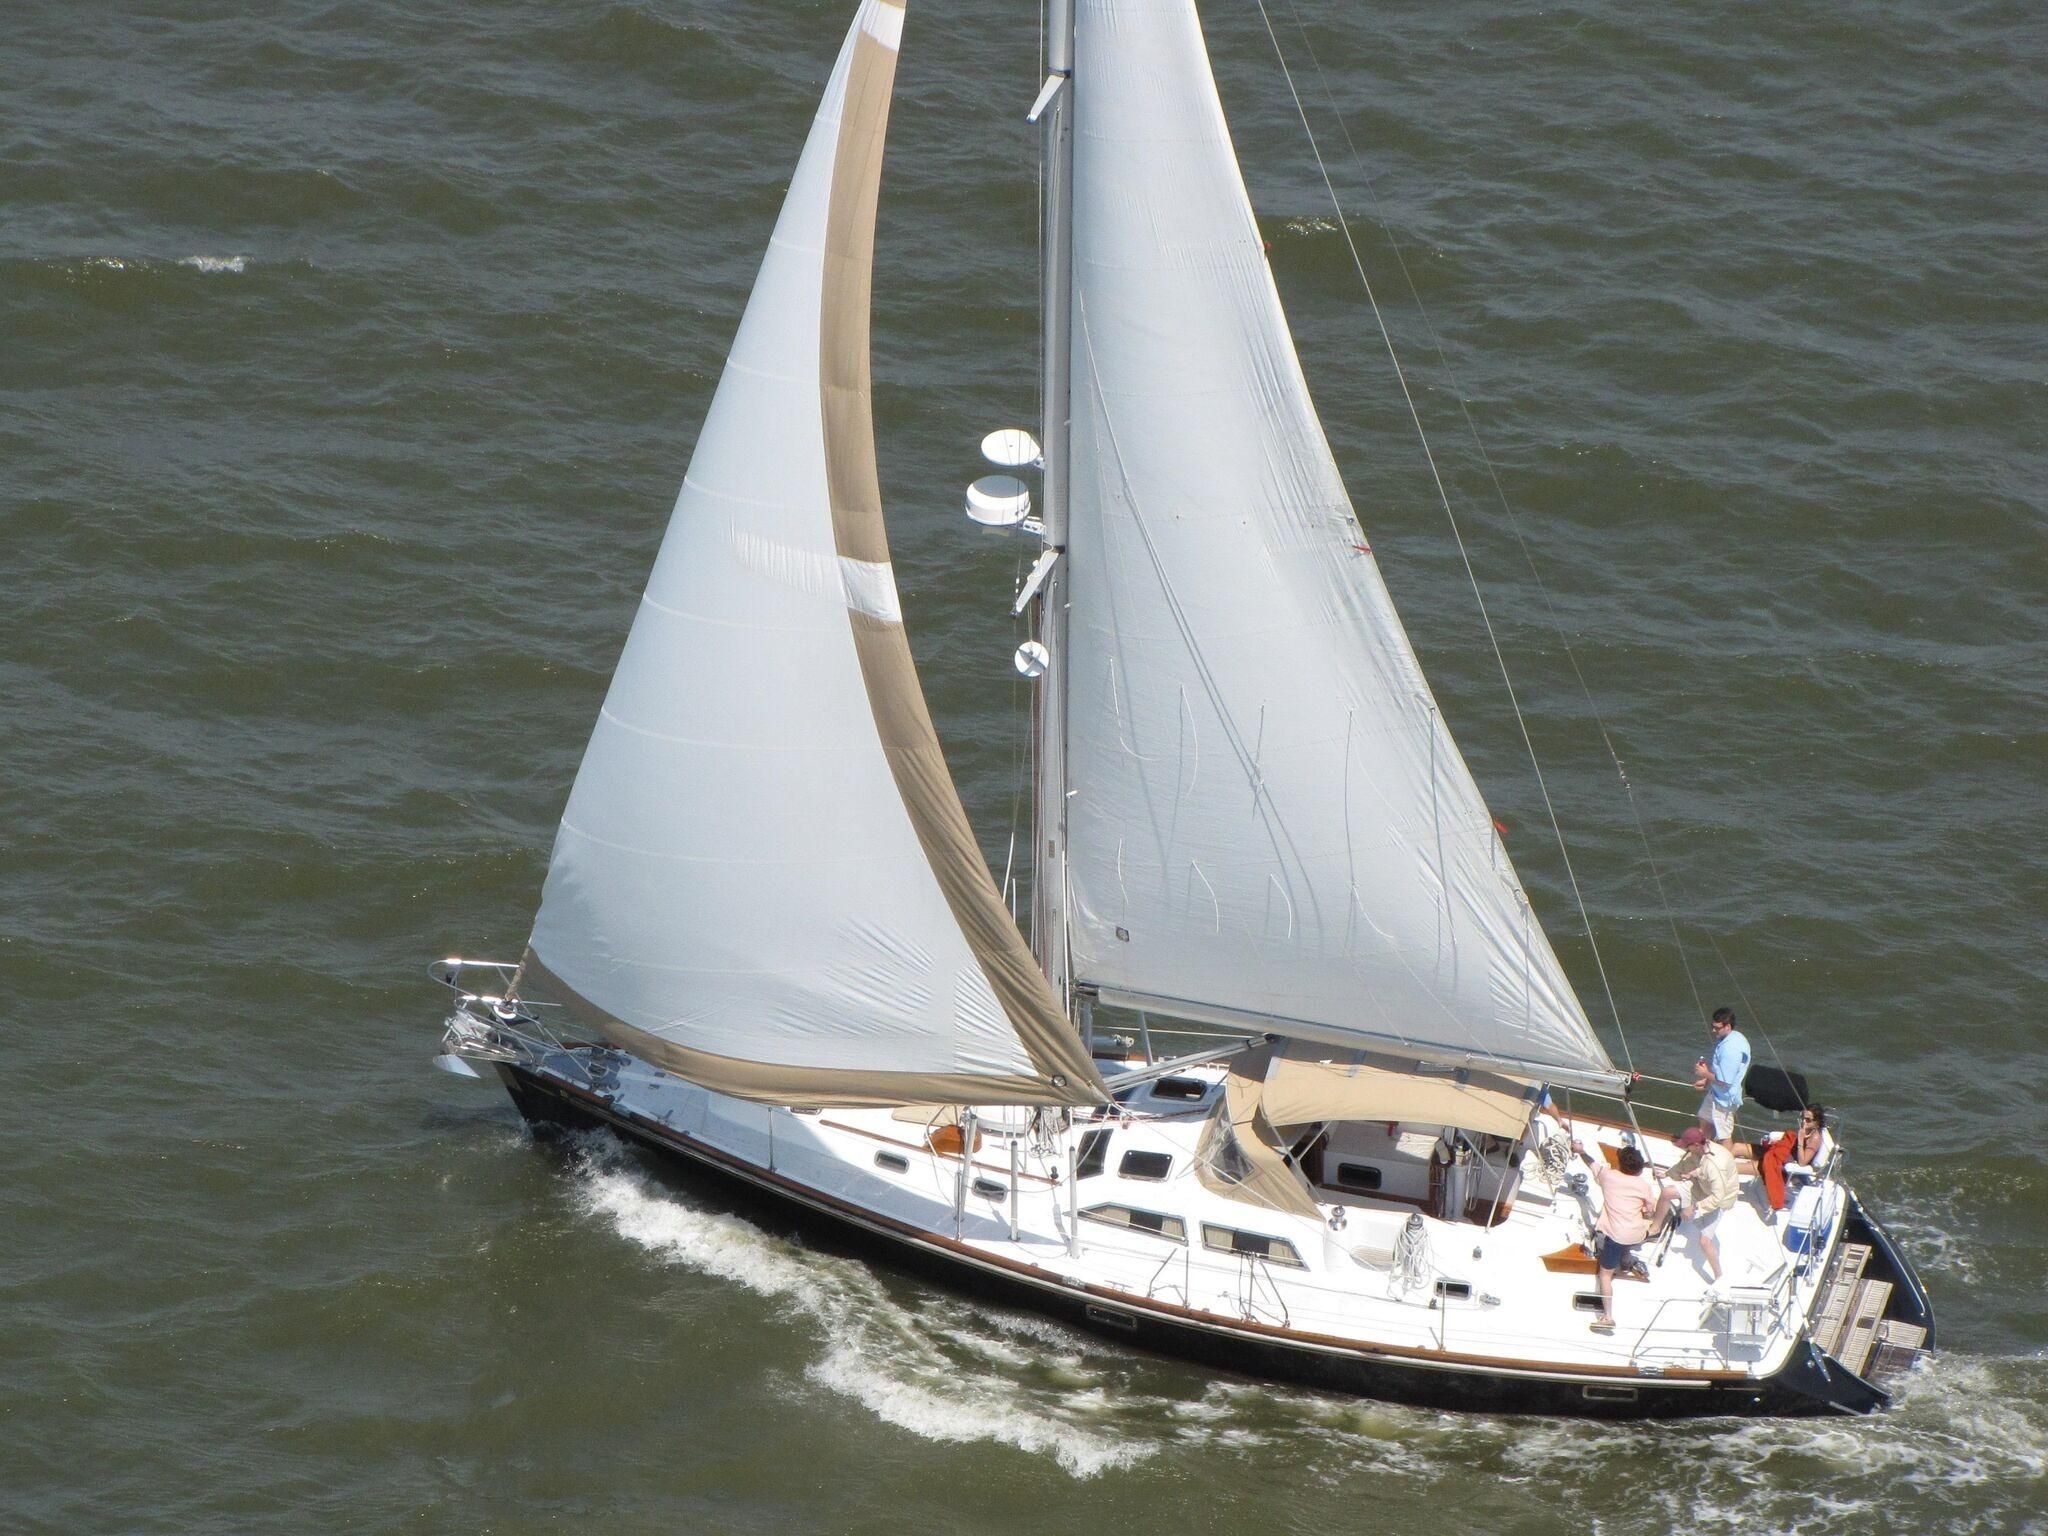 46 ft sailboat